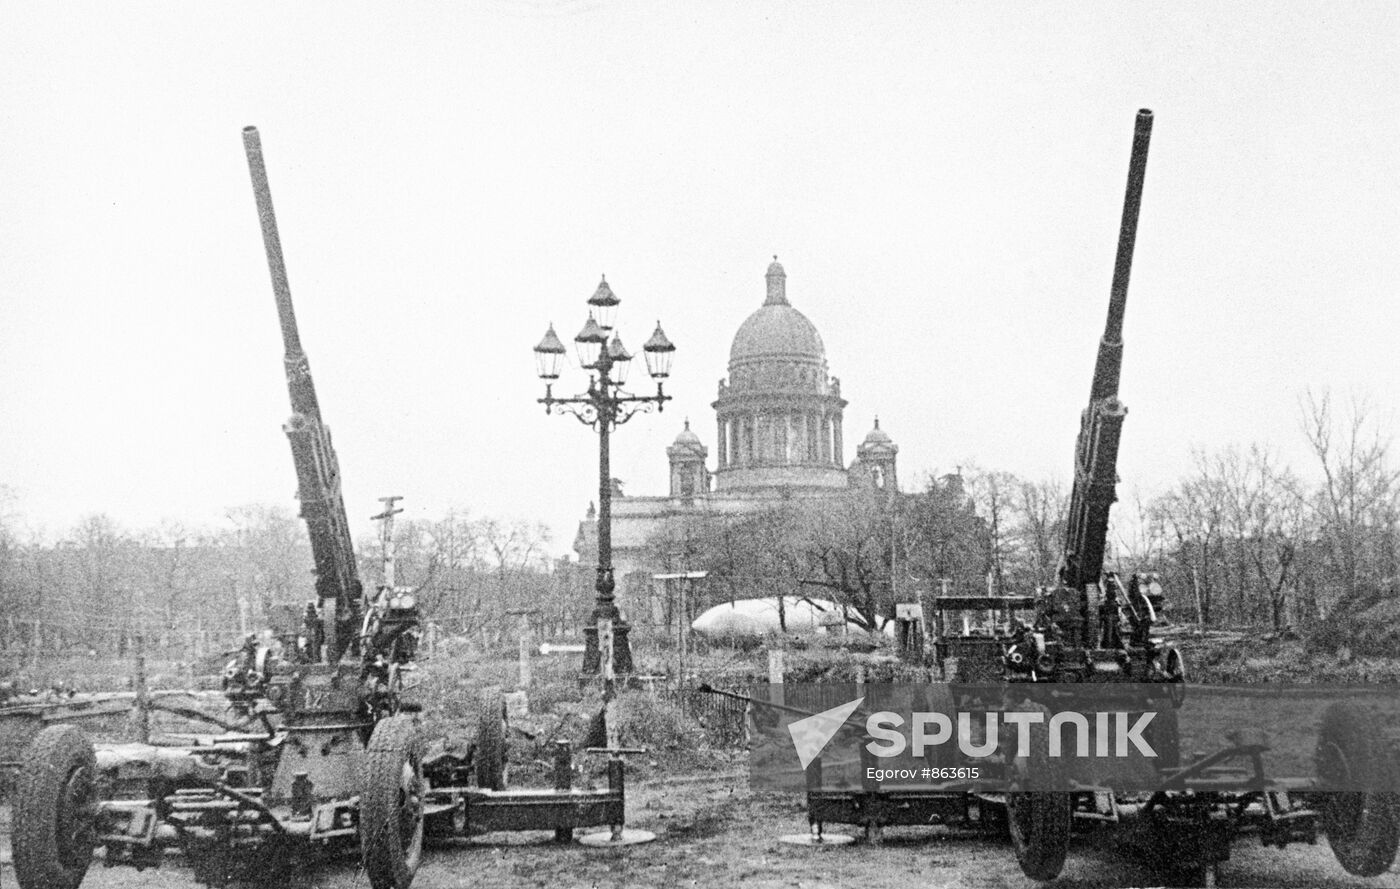 In blockaded Leningrad